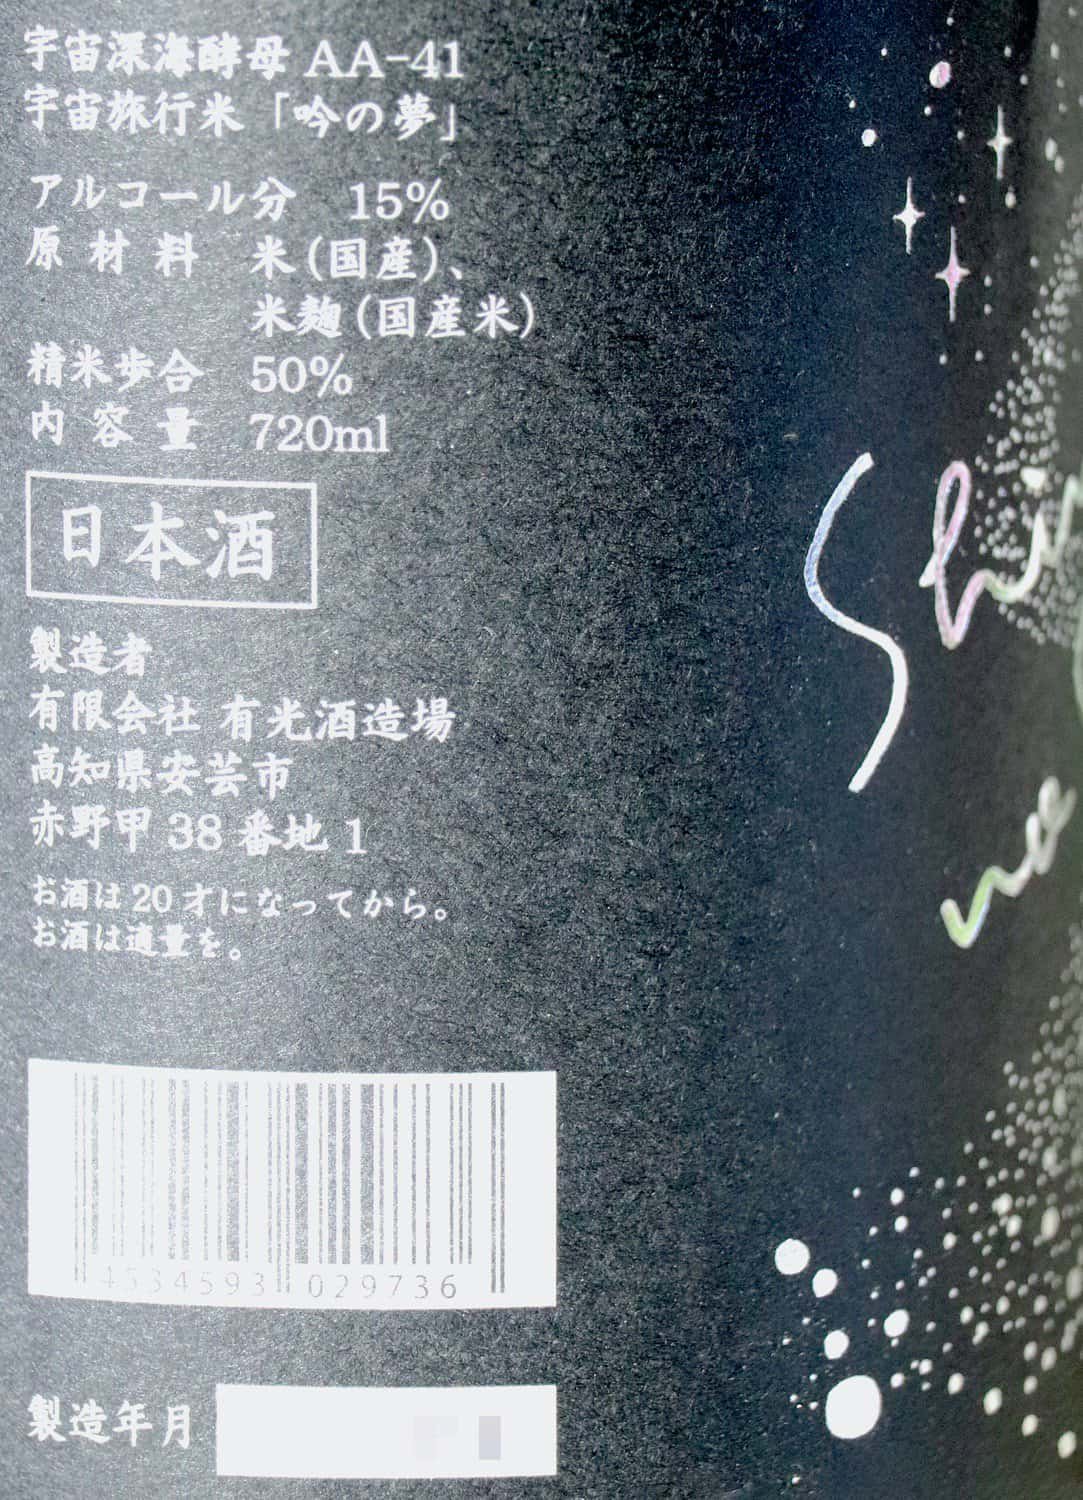 安芸虎 深海の宇宙(そら) 純米大吟醸 720ml